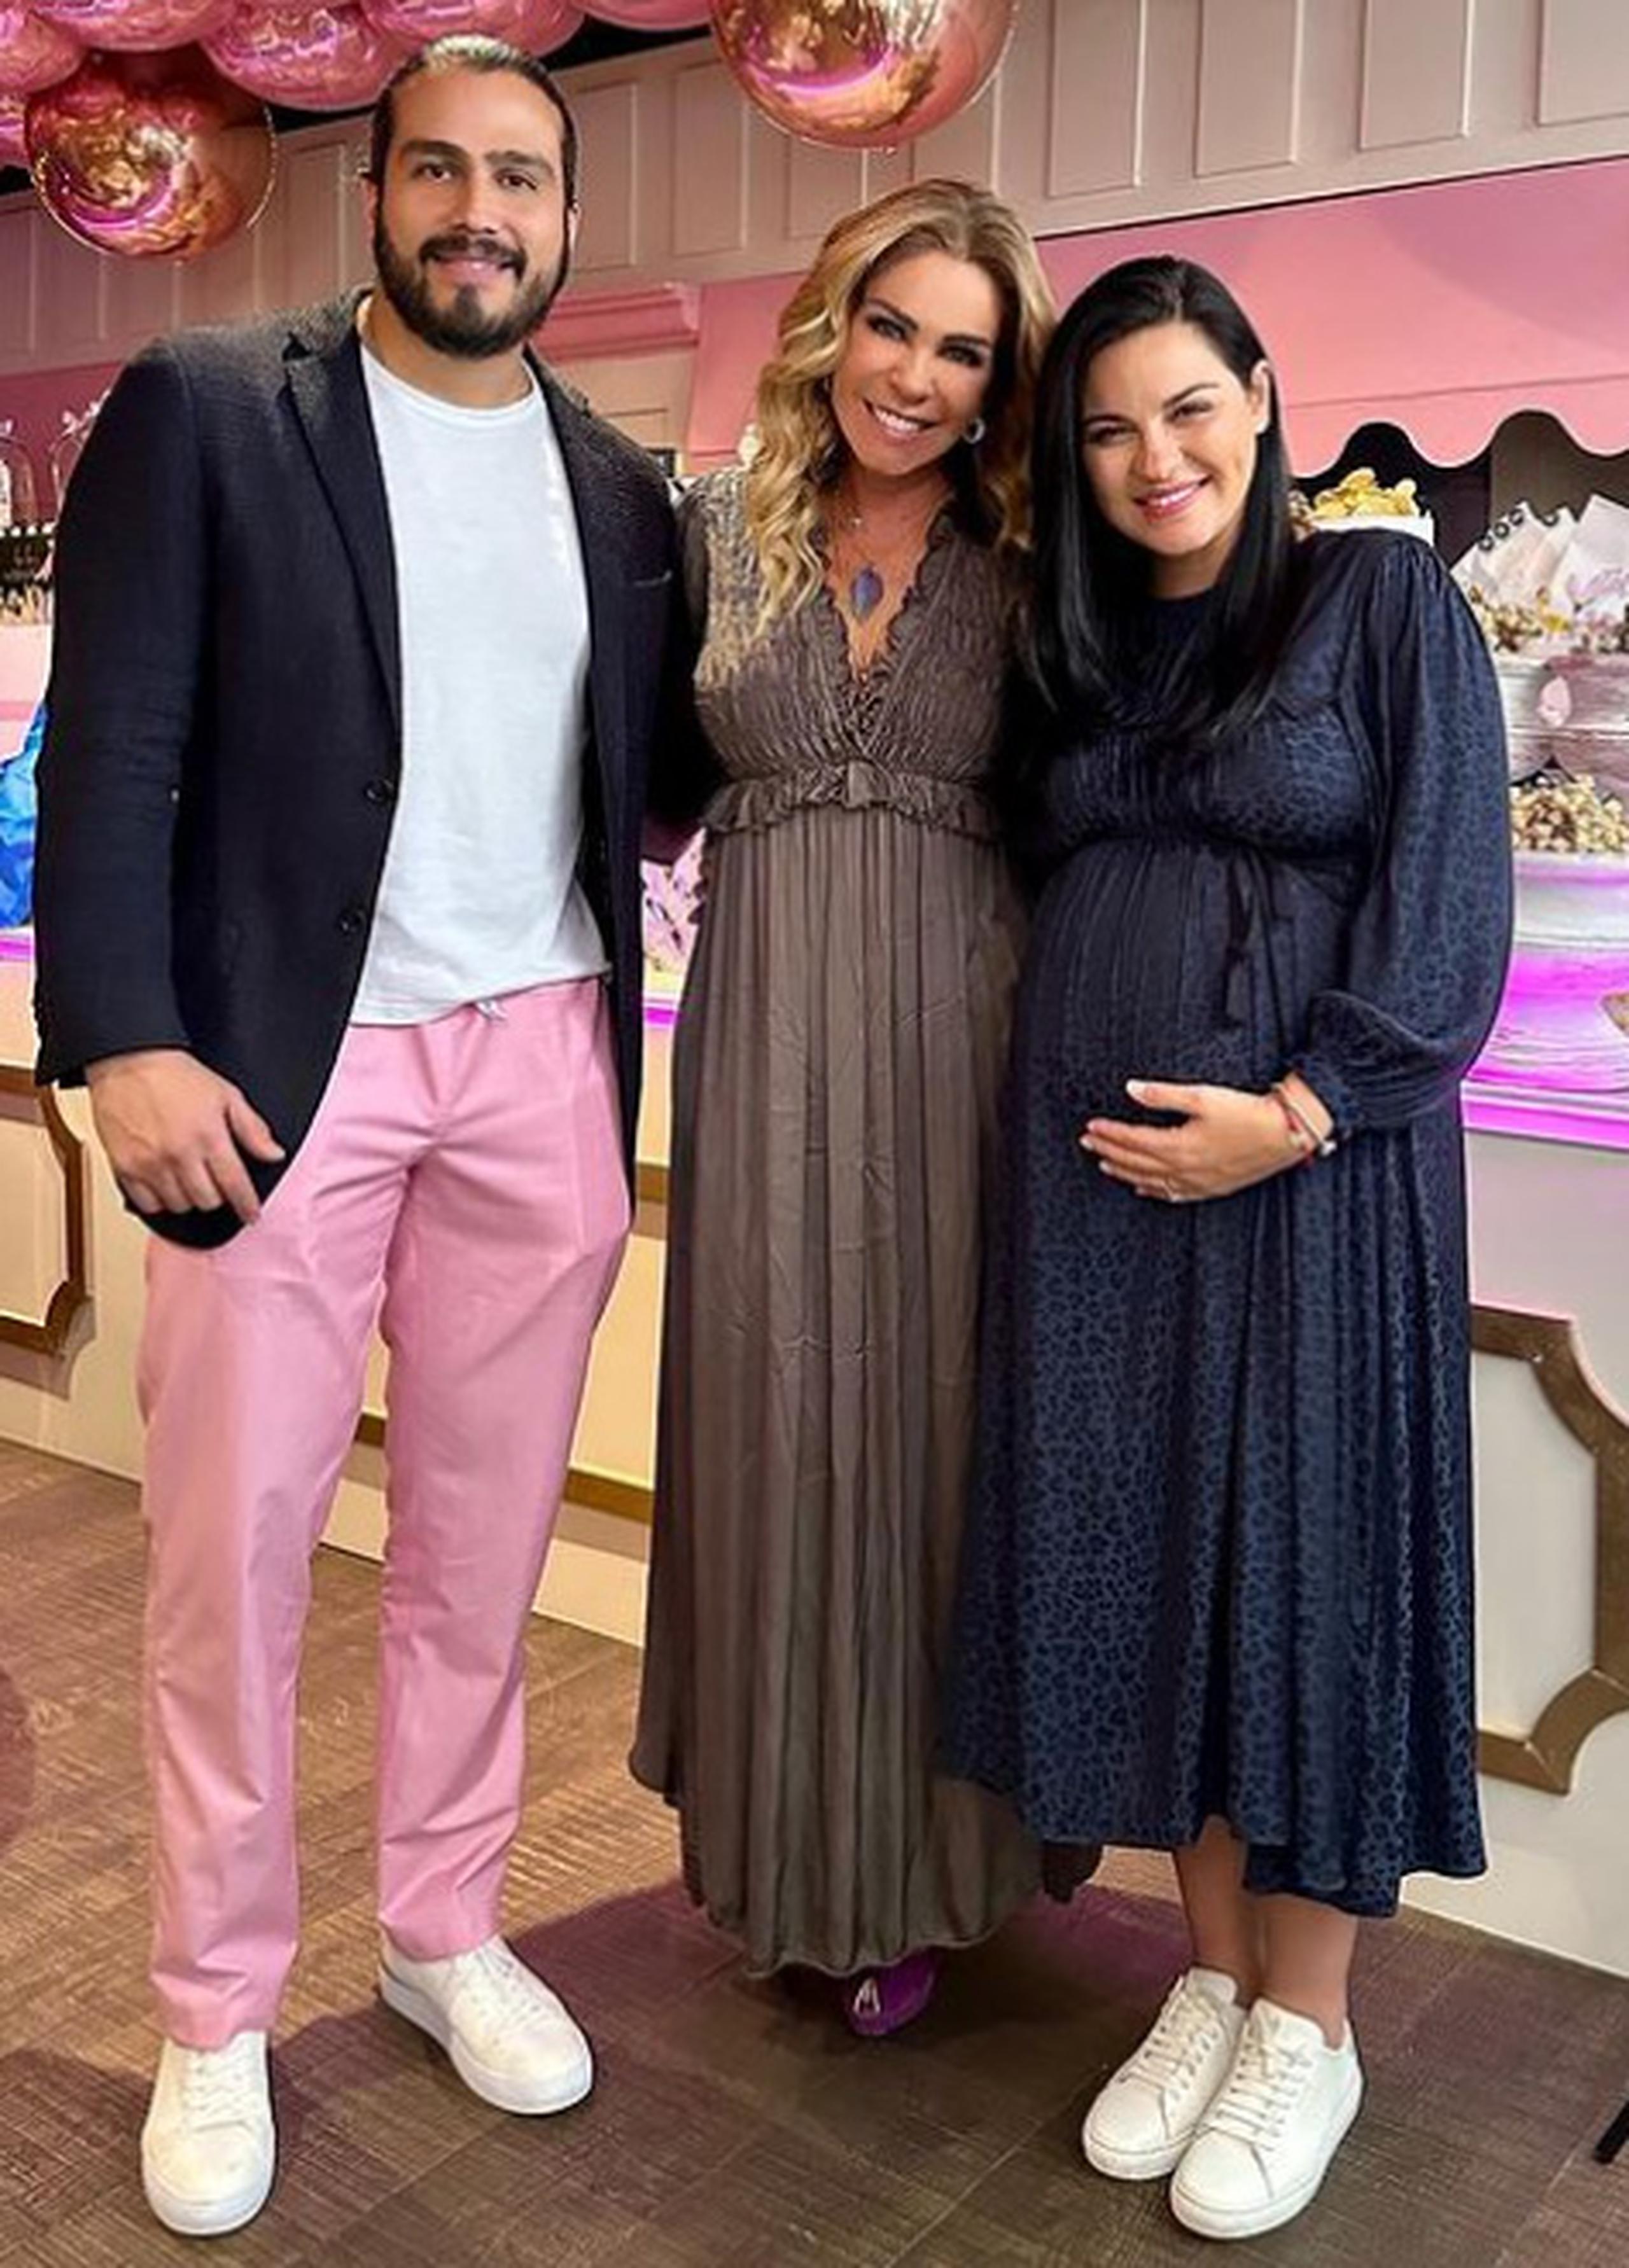 Maite Perroni junto a su esposo, Andrés Tovar, y la presentadora de televisión, Rocío Sánchez Azuara. (Instagram)